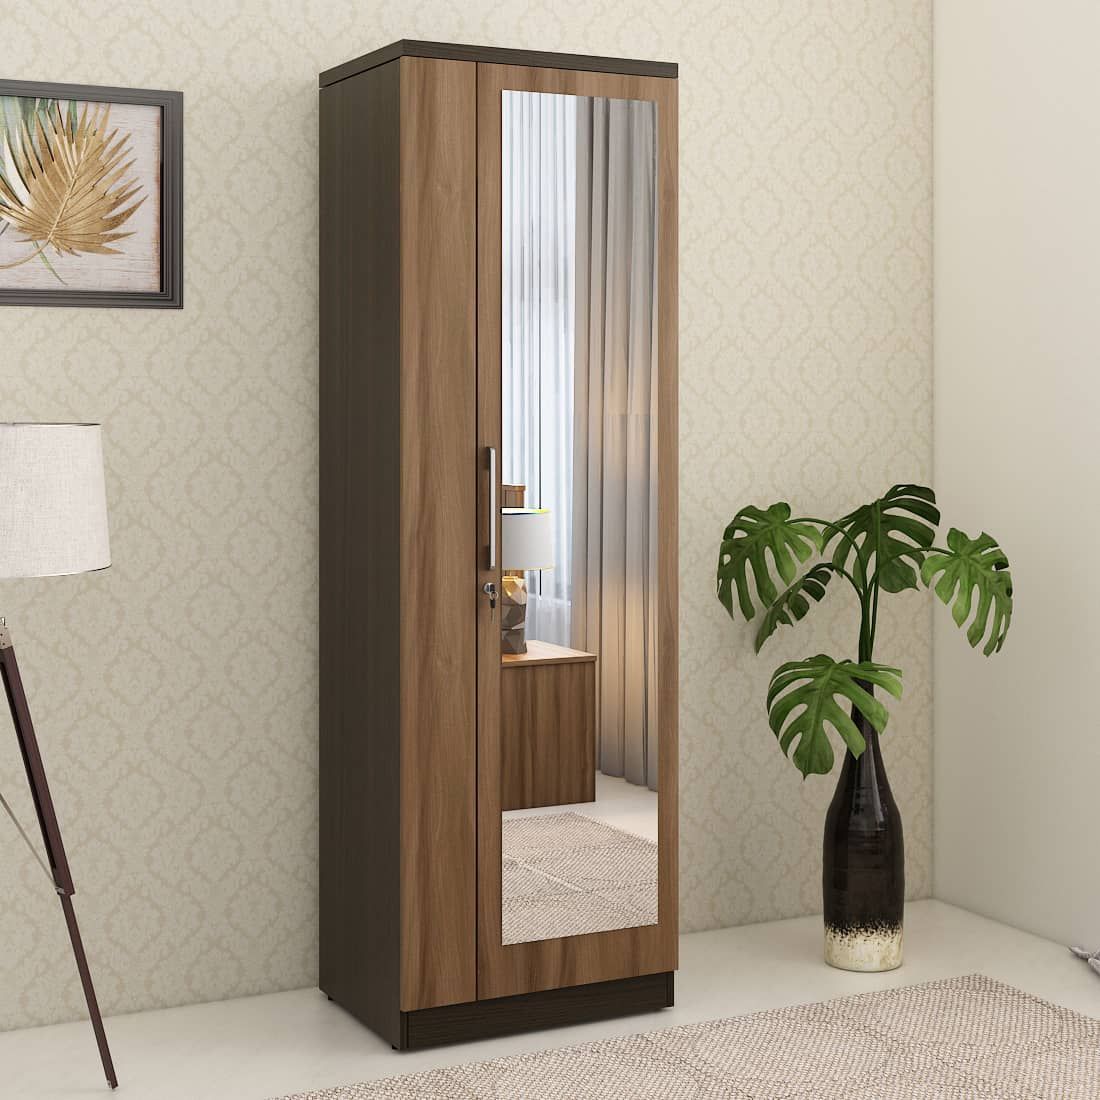 Kosmo Ken 1 Door Wardrobe With Mirror Walnut Bronze Woodpore | Spacewood  Ecommerce Inside One Door Mirrored Wardrobes (View 2 of 15)